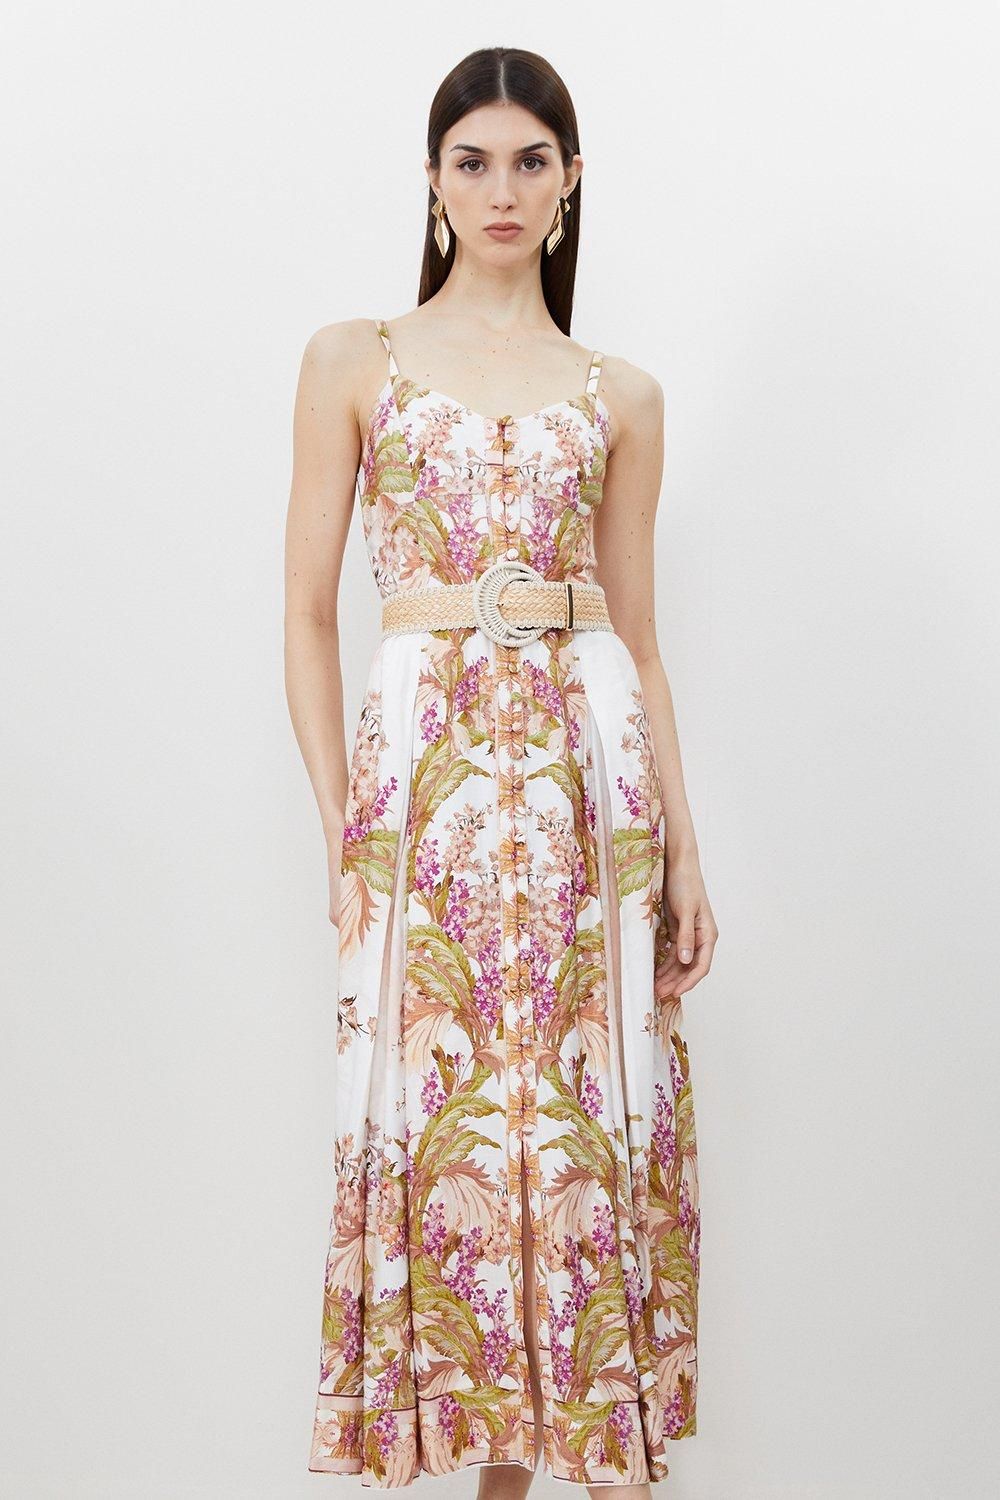 Mirorred Floral Viscose Linen Strappy Midaxi Dress | Karen Millen UK + IE + DE + NL